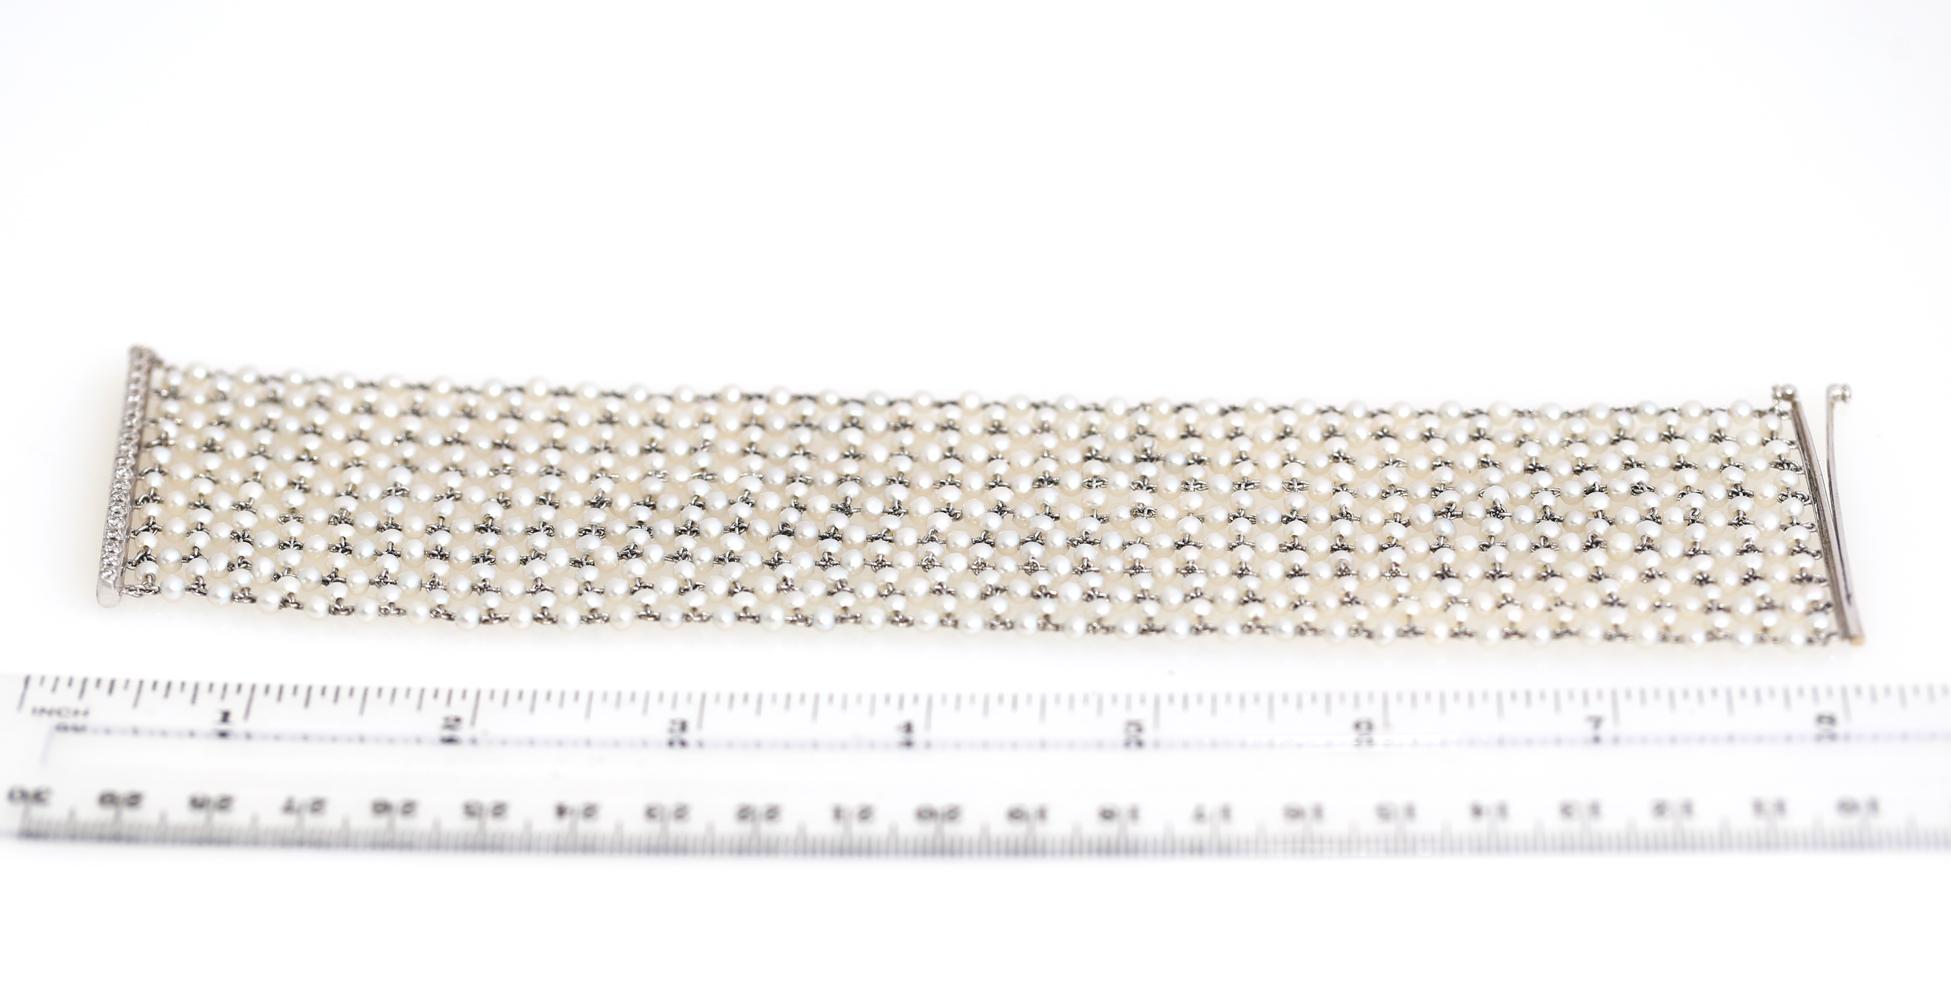 Fine Natural Pearl Samen Platin Armband mit einer Reihe von Diamanten. Aus einer großen Belle Époque um 1910. Durchbrochenes, hochflexibles Design mit Reihen von Saatperlen auf einem Platindraht, der Abschlussstab wird durch eine Reihe von Diamanten